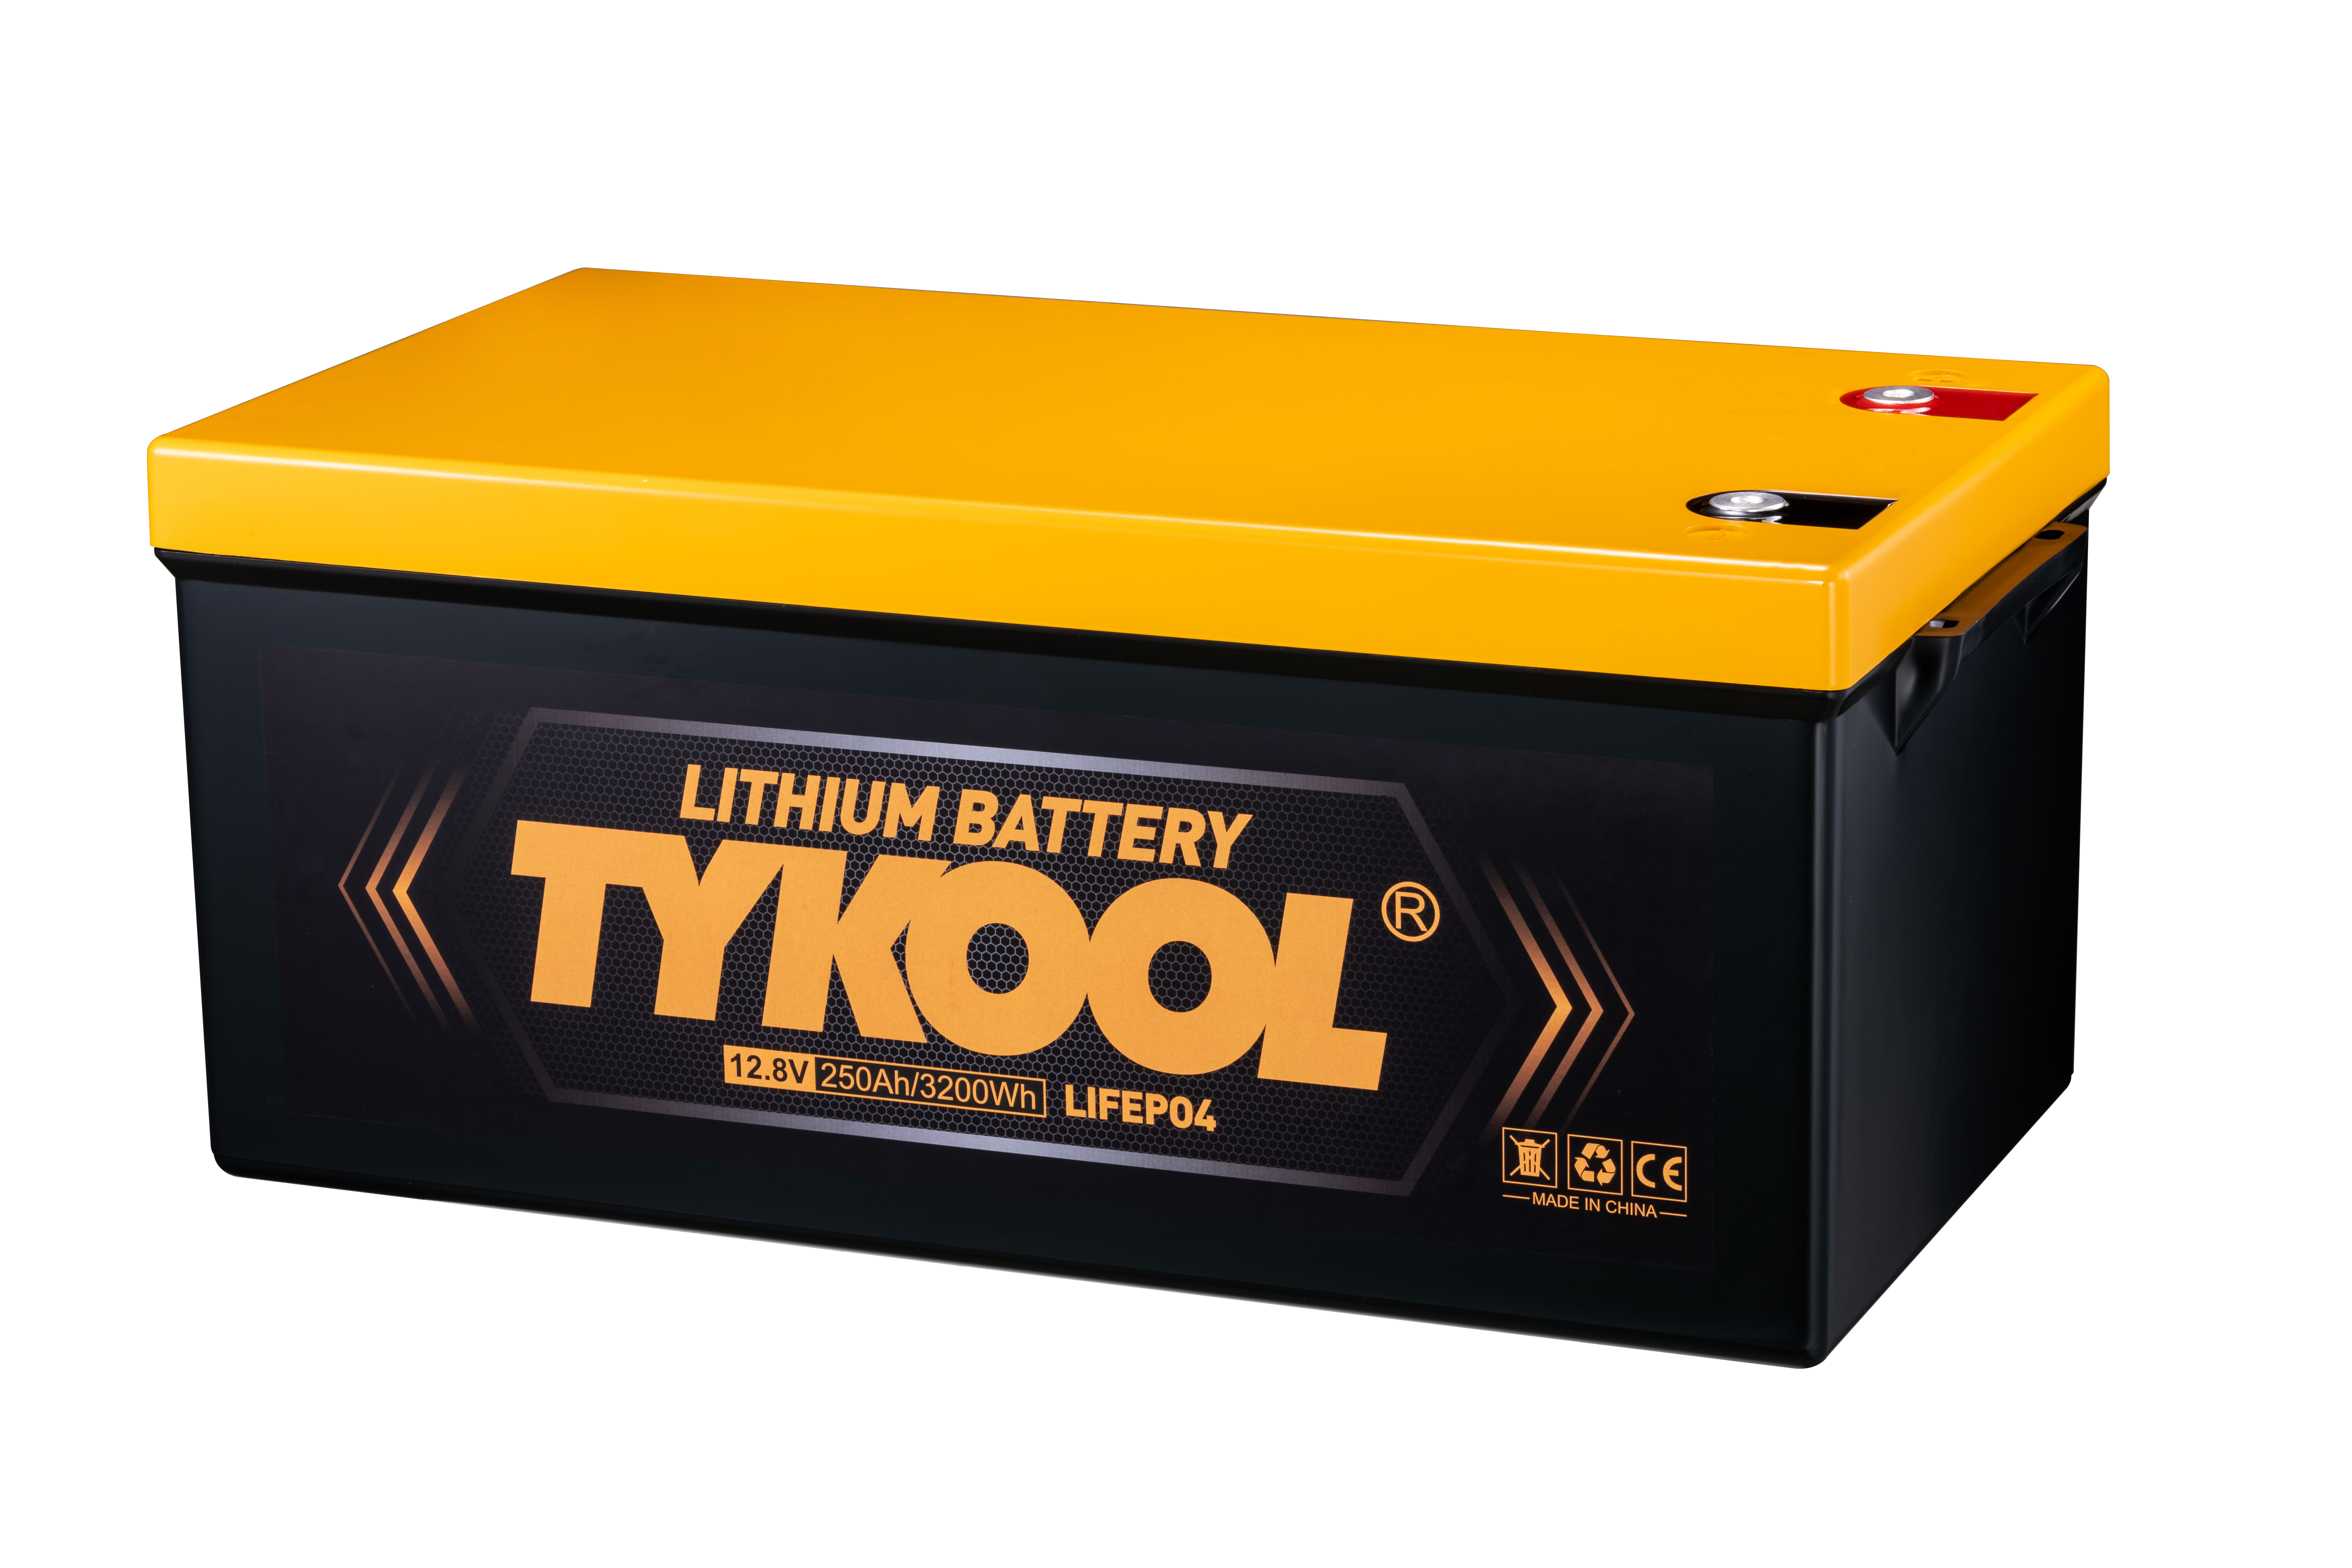 12.8V / 12V 250Ah LiFePO4 Lithium Battery